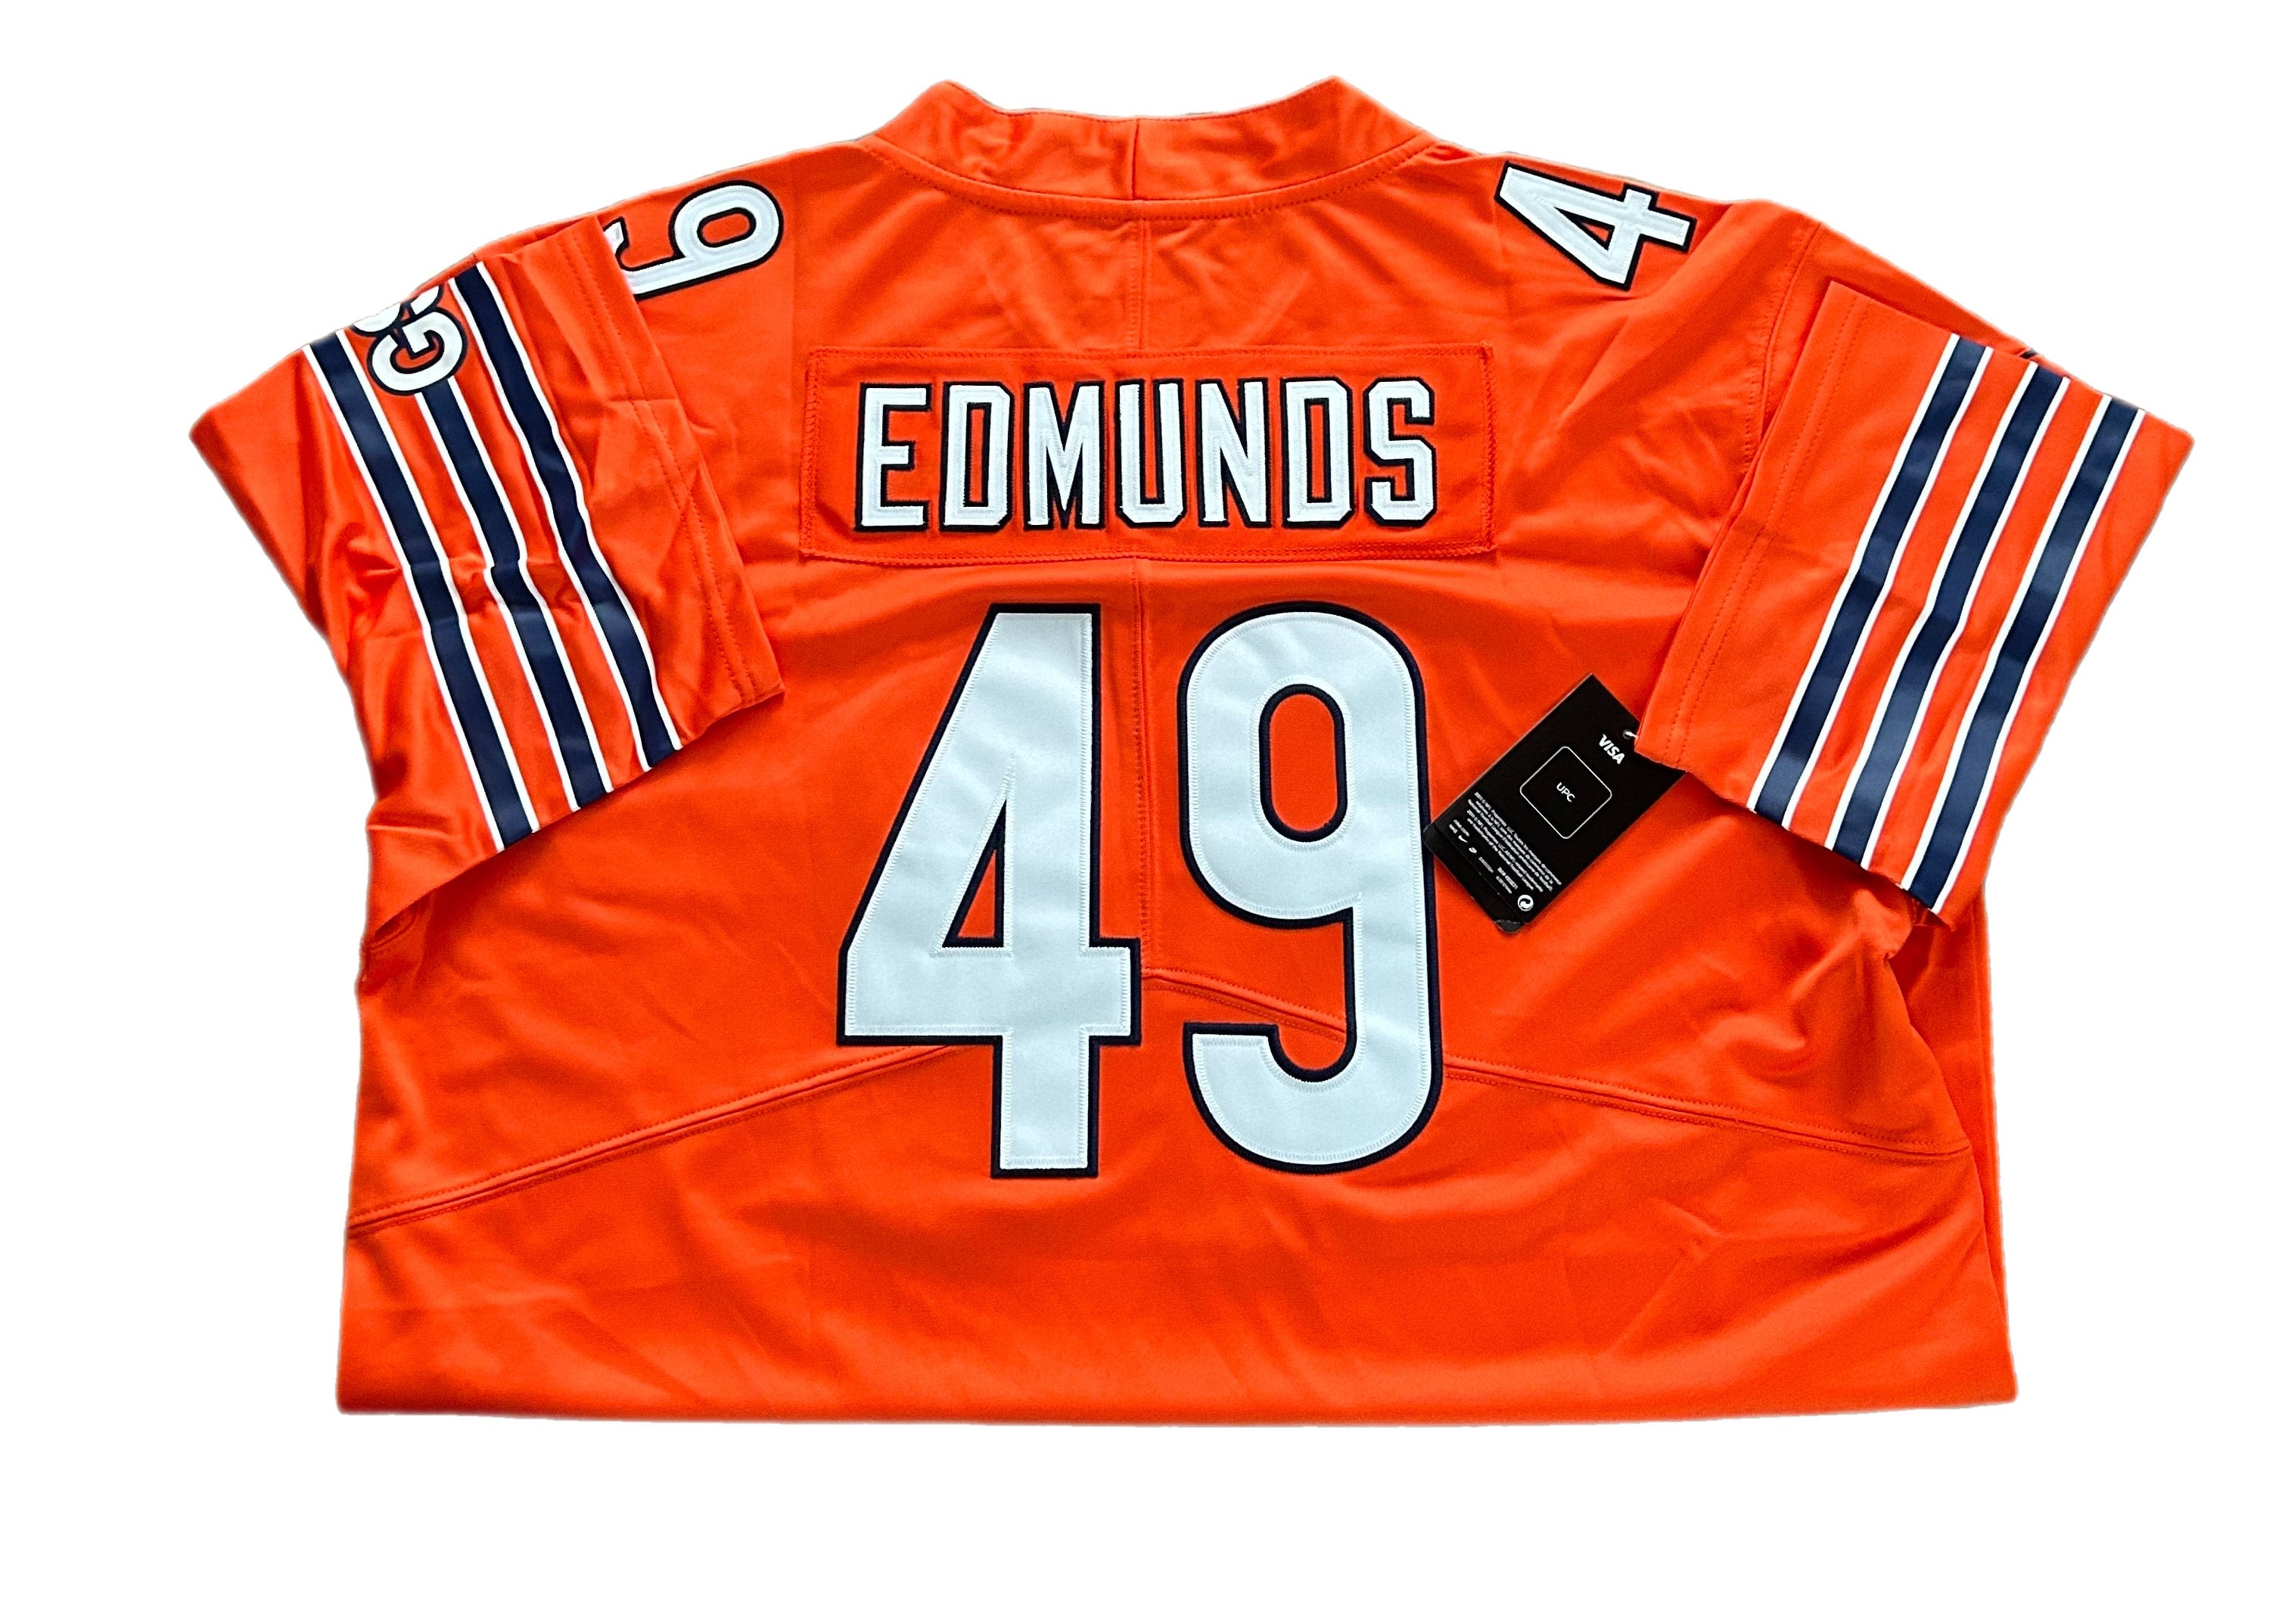 Edmunds Tremaine replica jersey